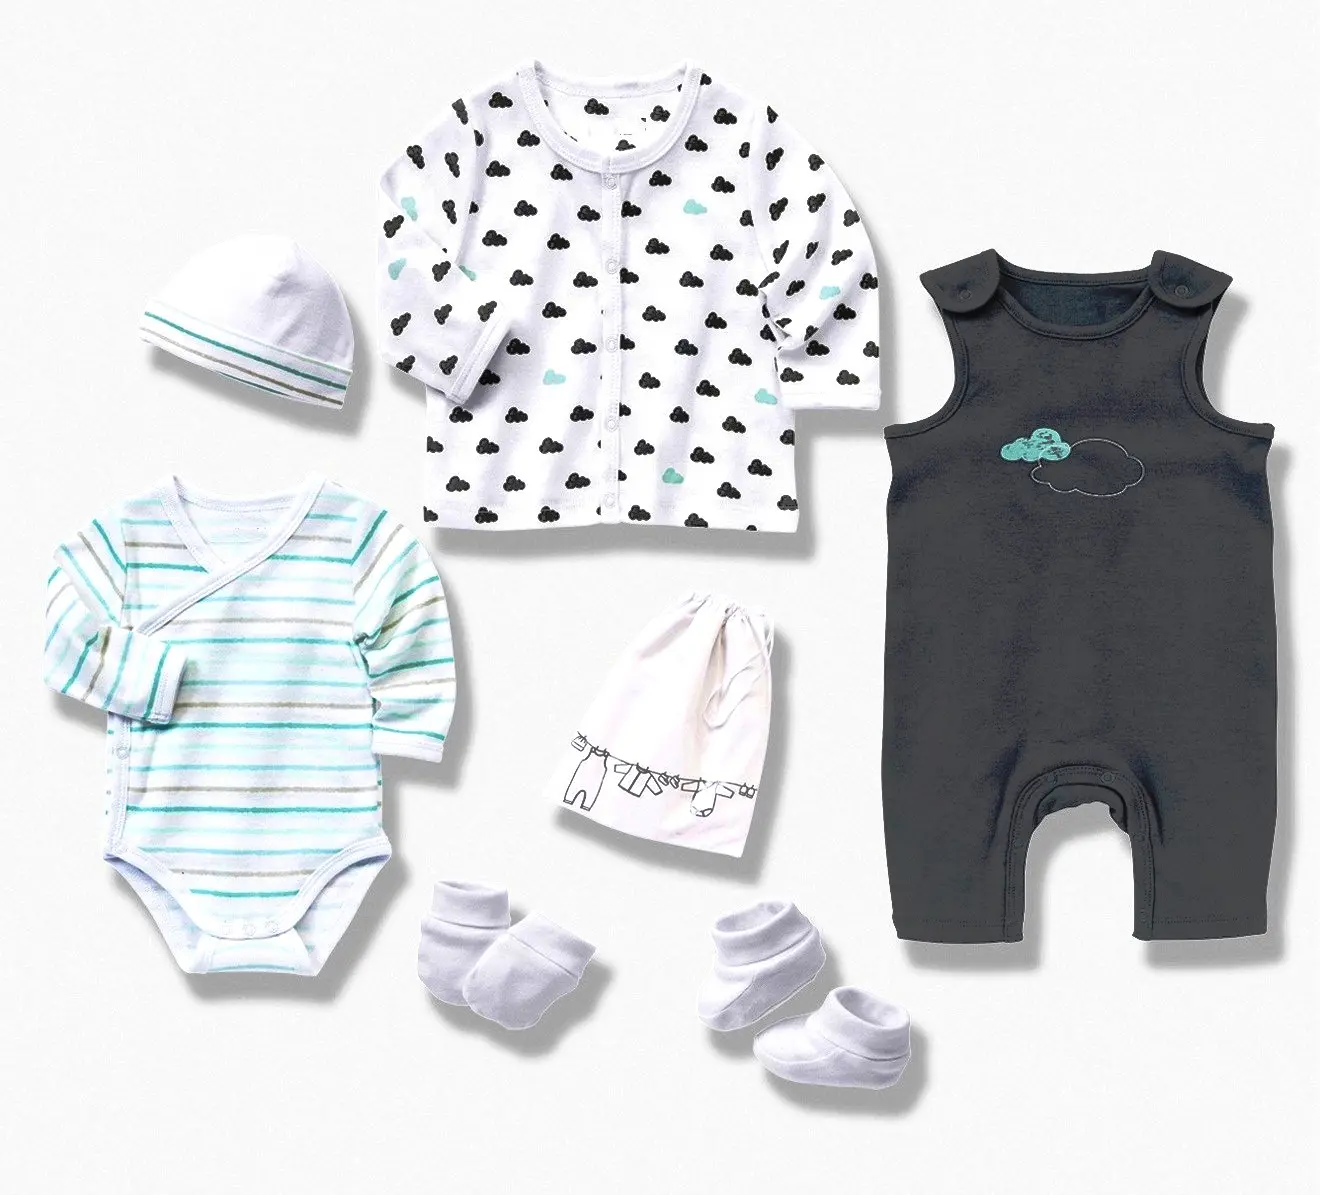 Yenidoğan bebek 6 adet giyim seti, bebek giyim seti bebek giysileri özel etiket OEM hizmeti yeni doğan bebek hediye seti Unisex kış